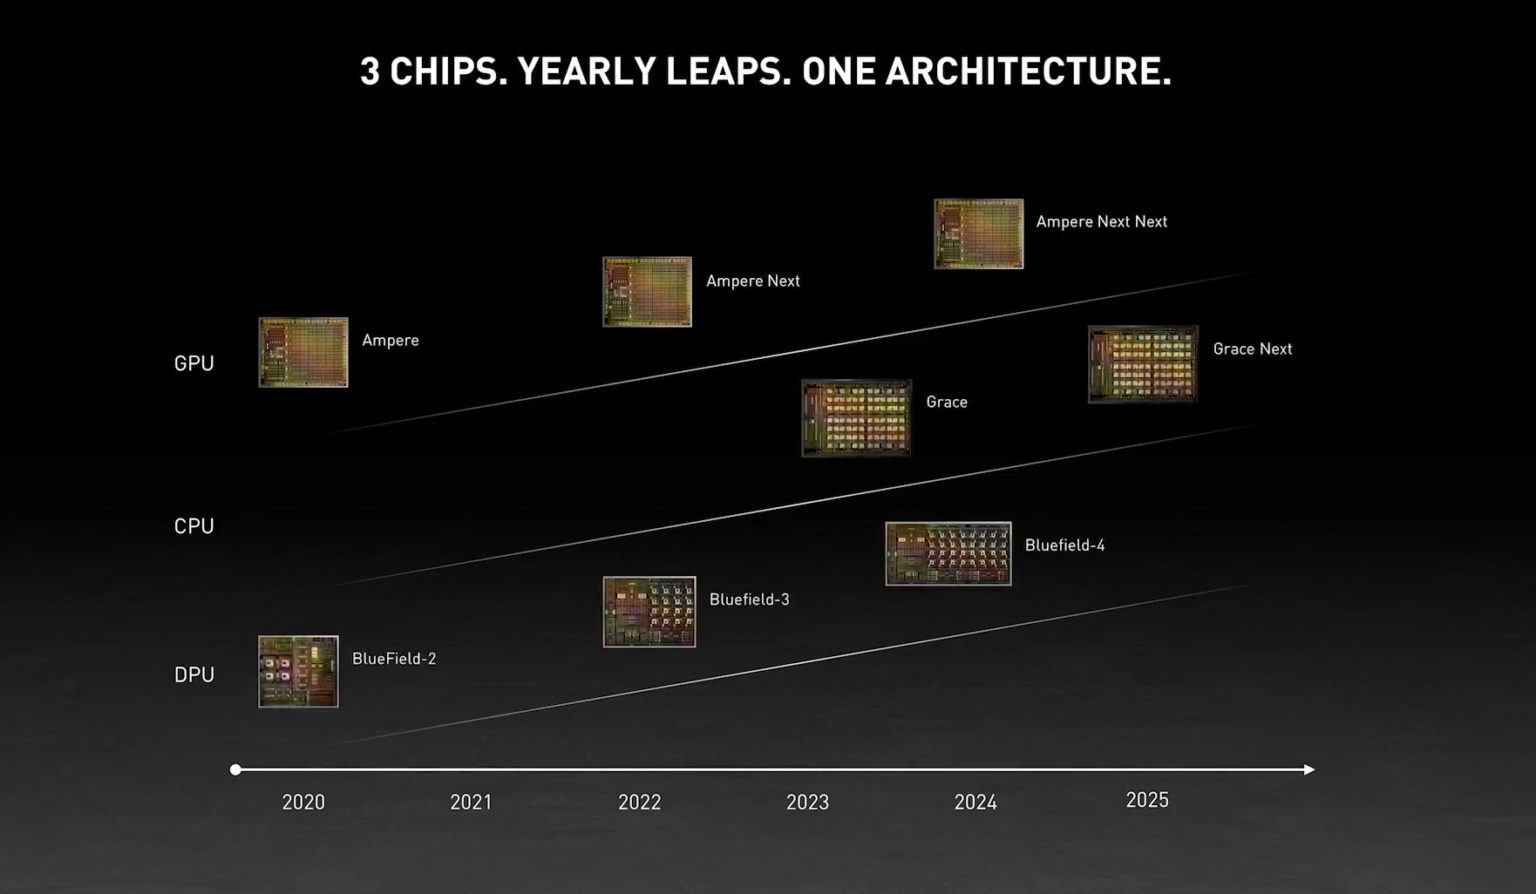 NVIDIA-DPU-GPU-CPU-Roadmap-2020-2025-1536x894.jpg